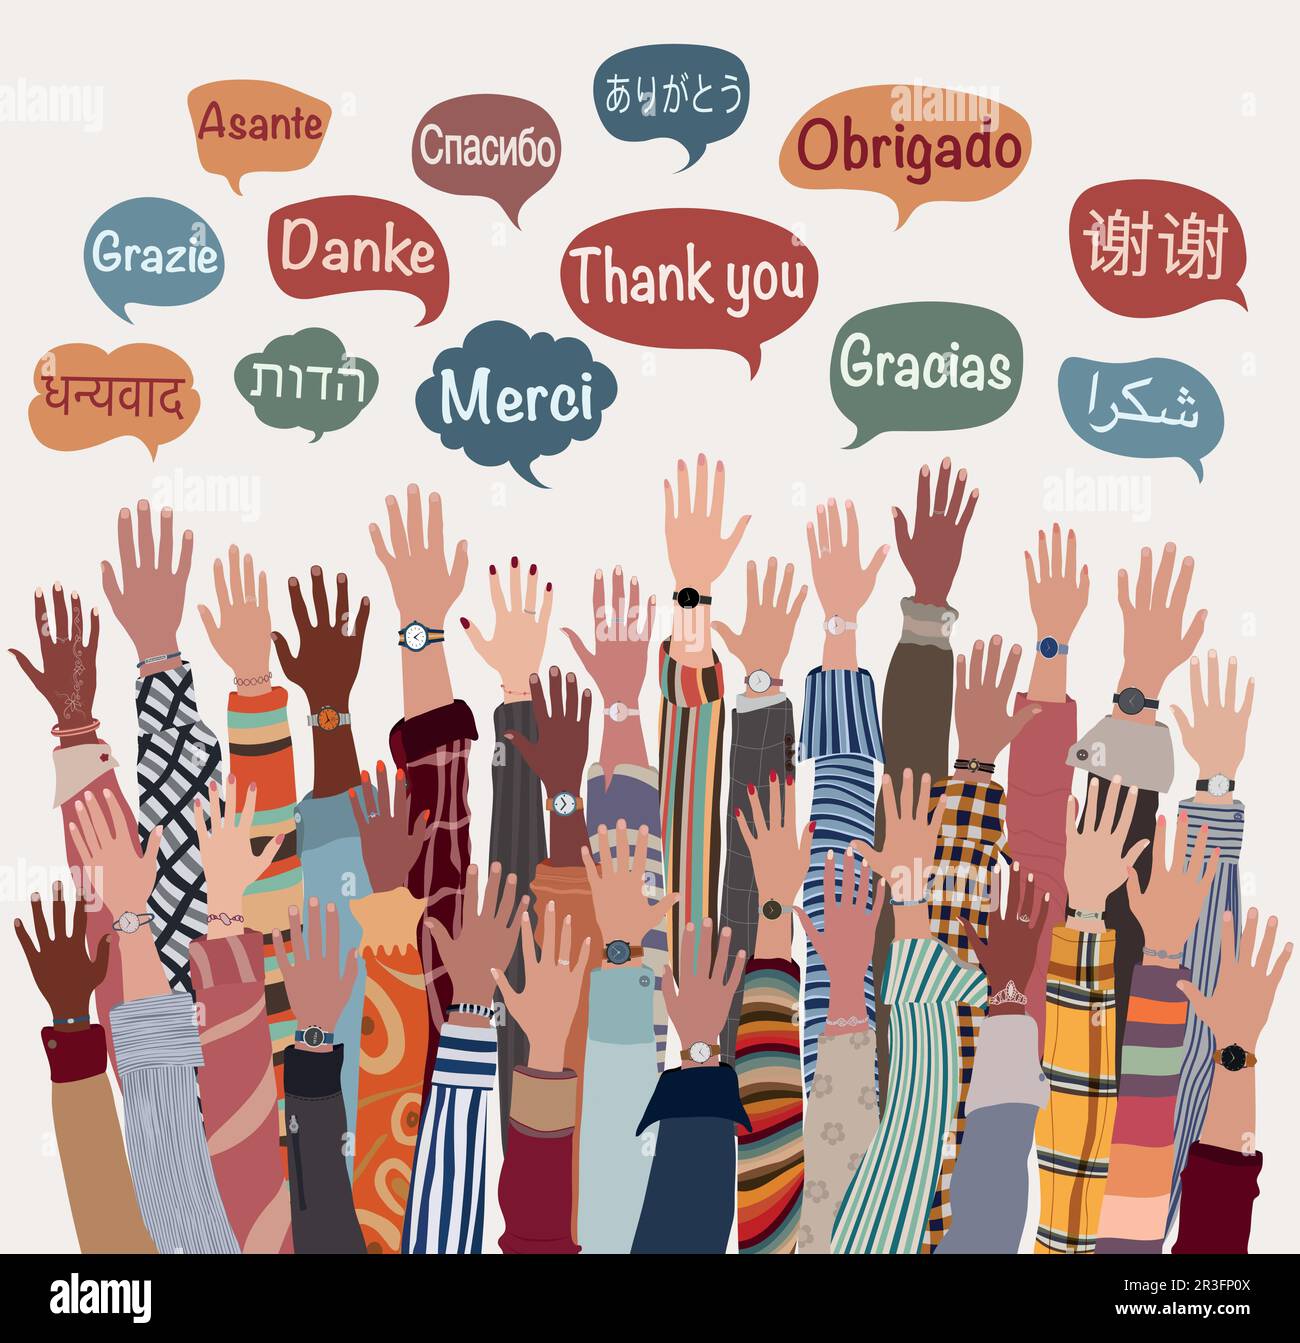 La mano ha alzato la gente multiculturale dalle nazioni e dai continenti differenti con le bolle di discorso con il testo -grazie- in varie lingue internazionali Illustrazione Vettoriale